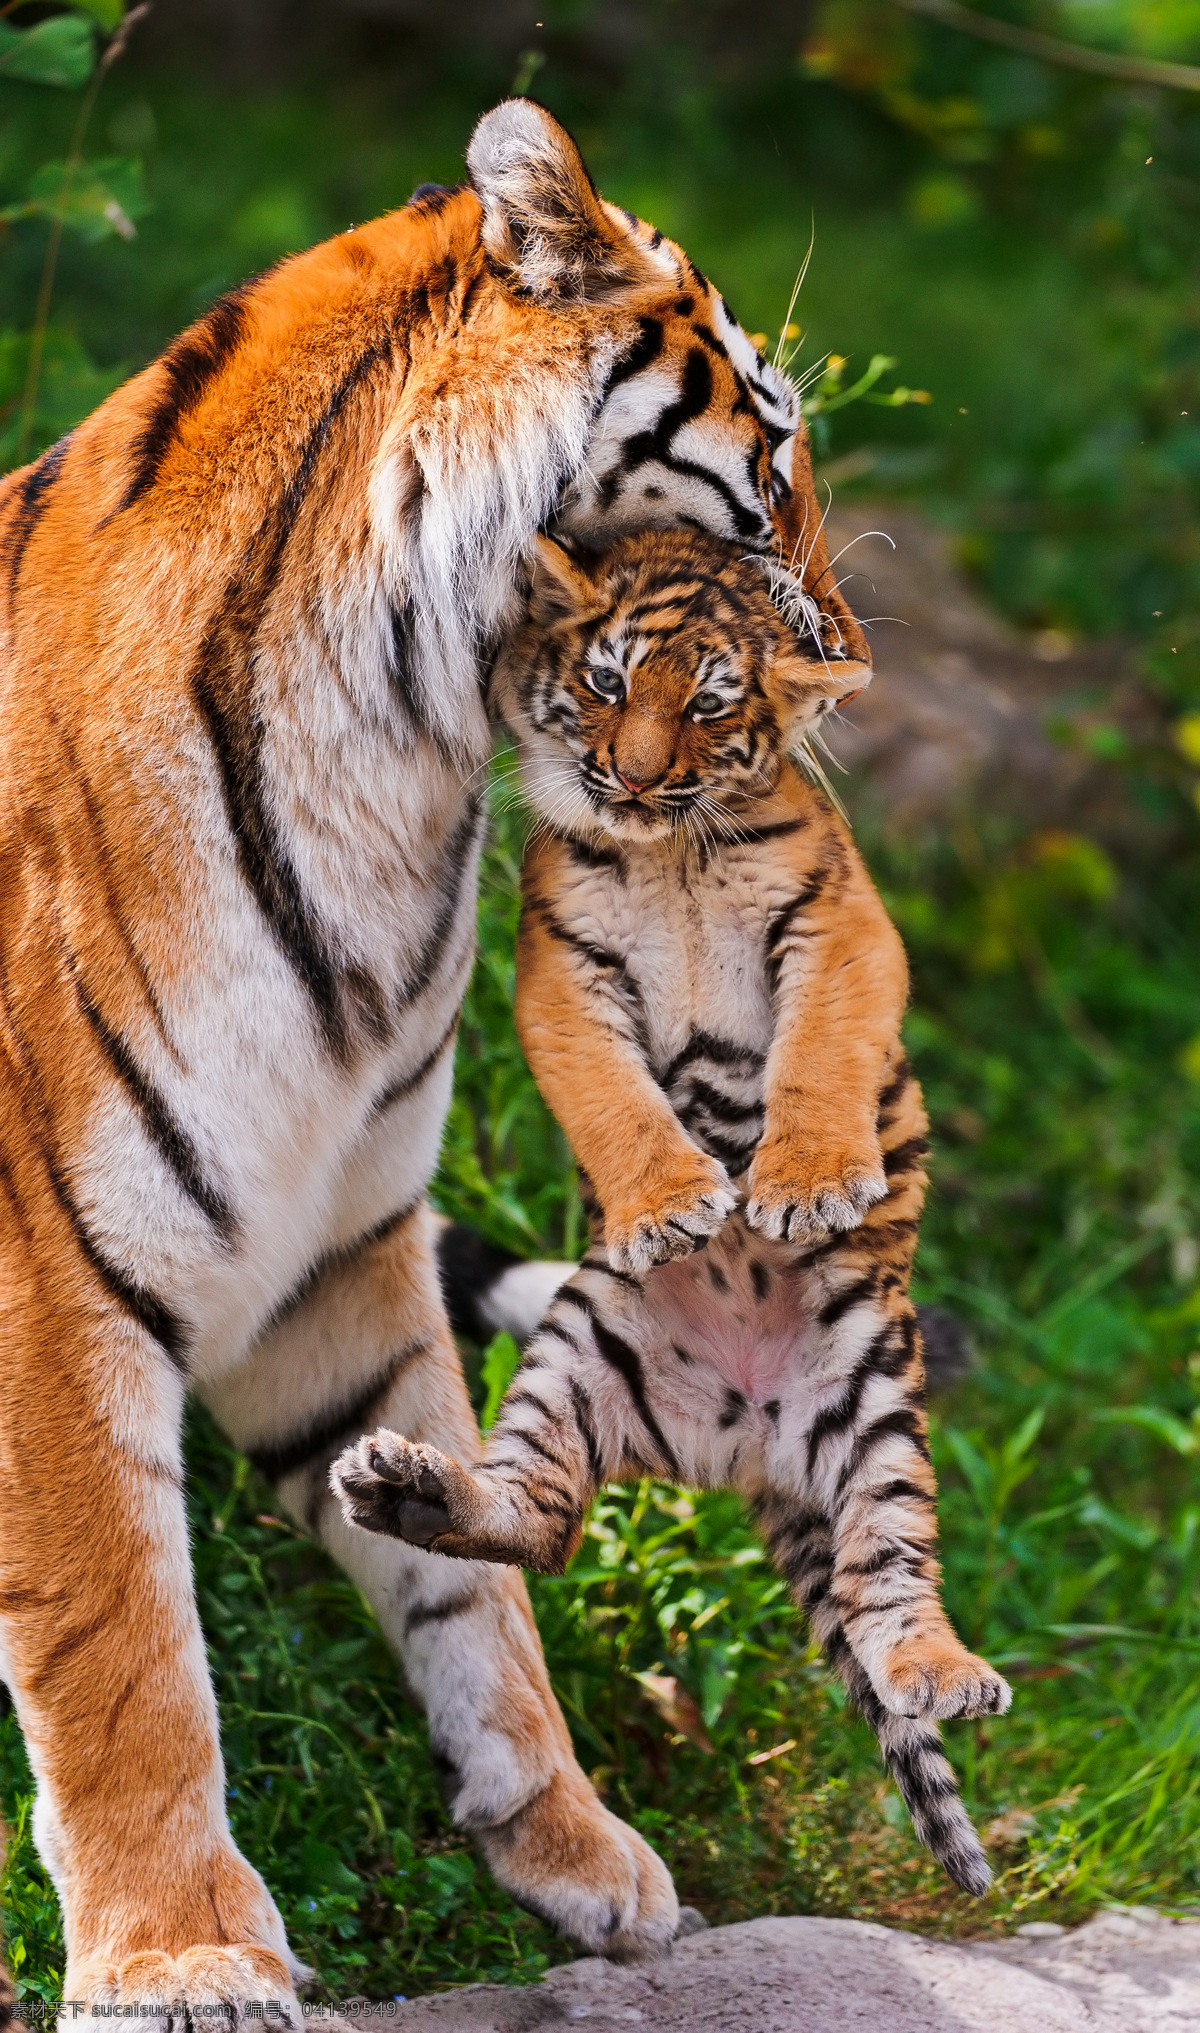 老虎 东北虎 华南虎 母子 叨着 小虎 幼虎 可爱 保护动物 哺乳动物 野生动物 生物世界